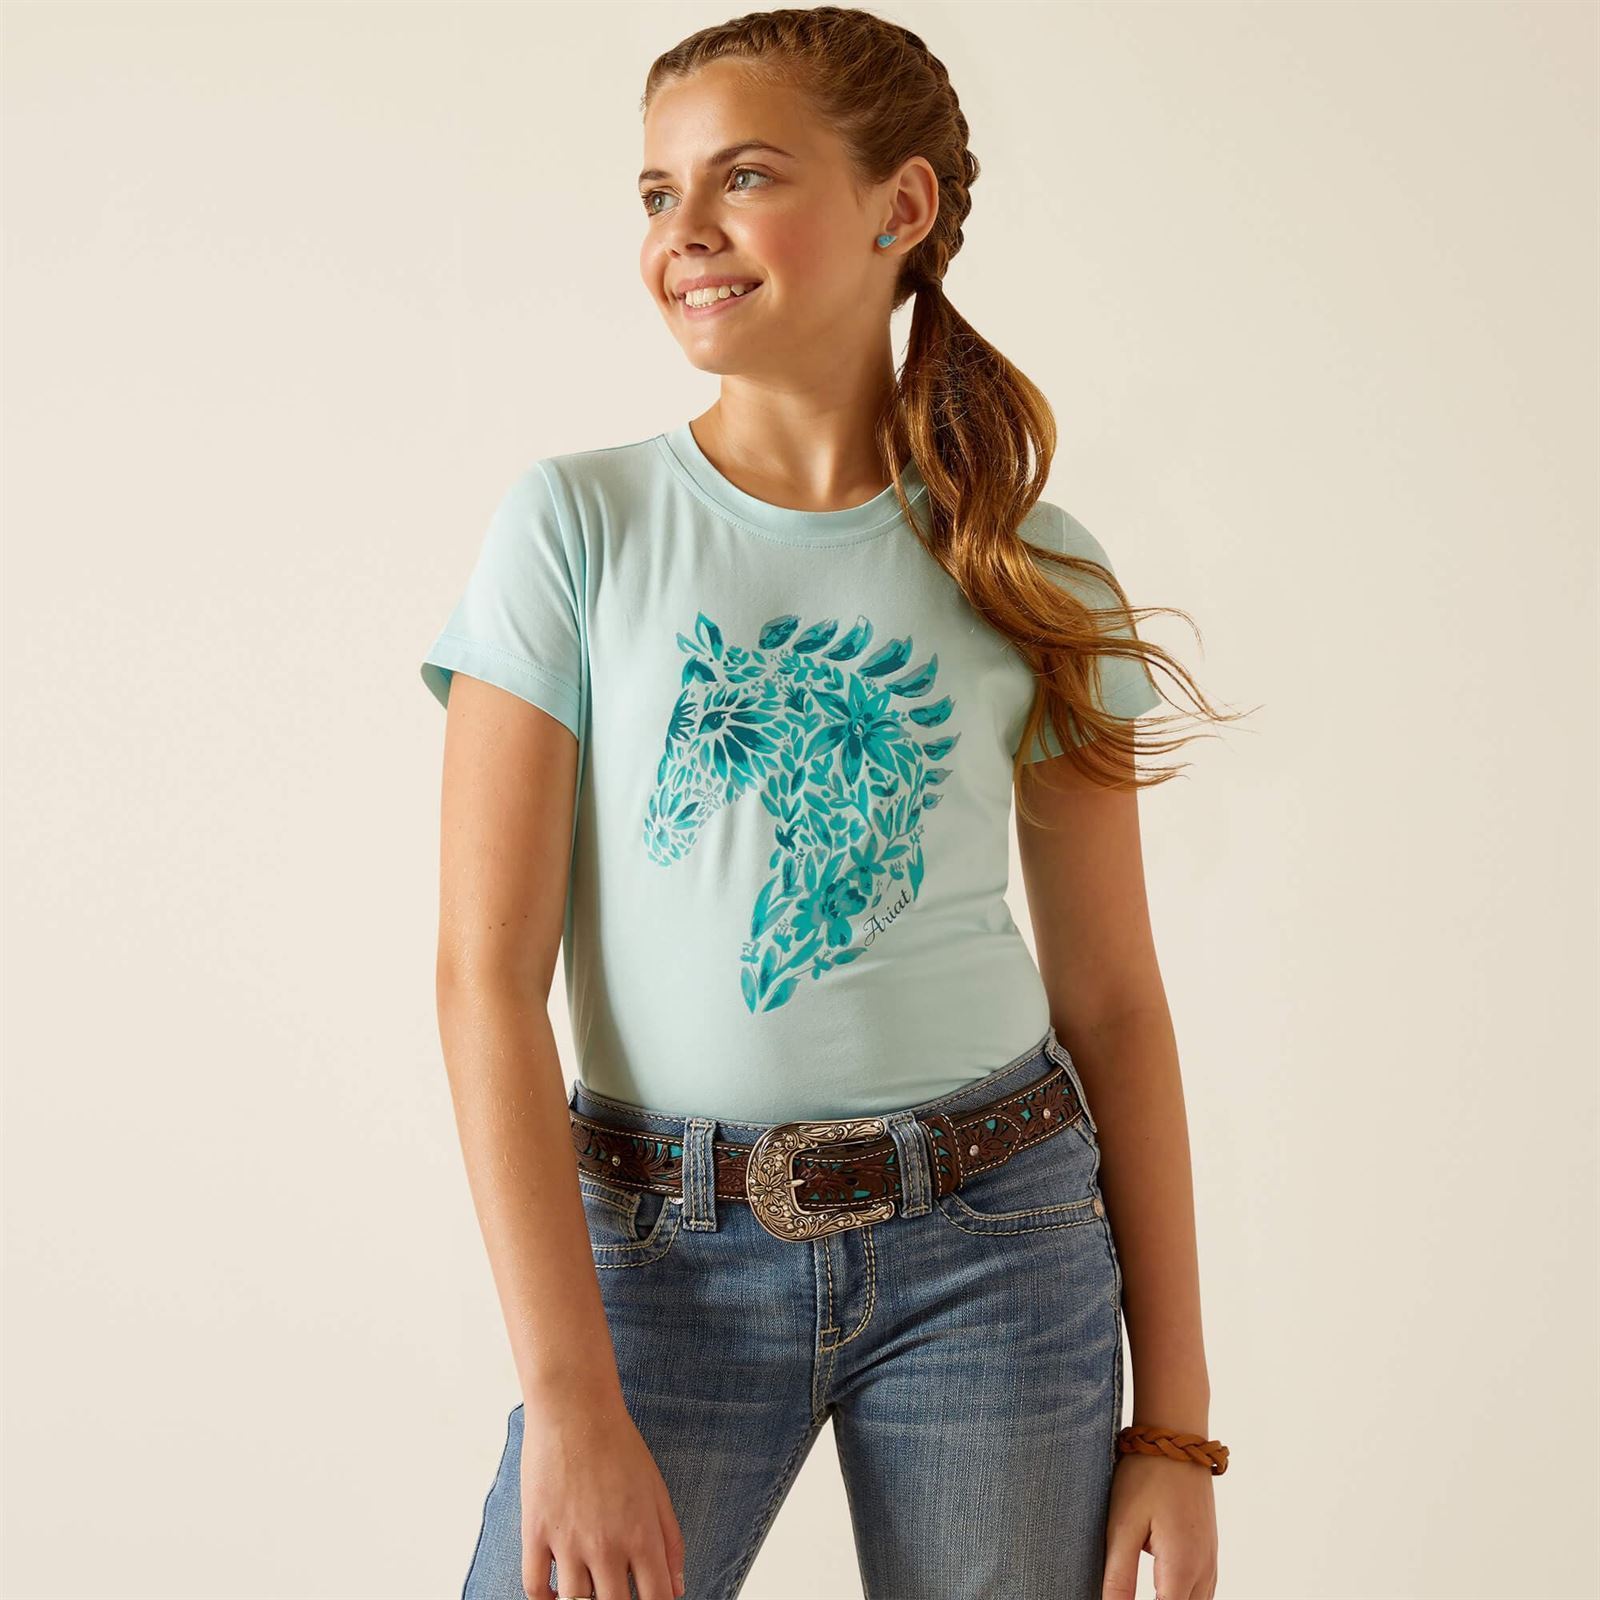 Camiseta Ariat niña Floral Mosaic color azul turquesa - Imagen 2